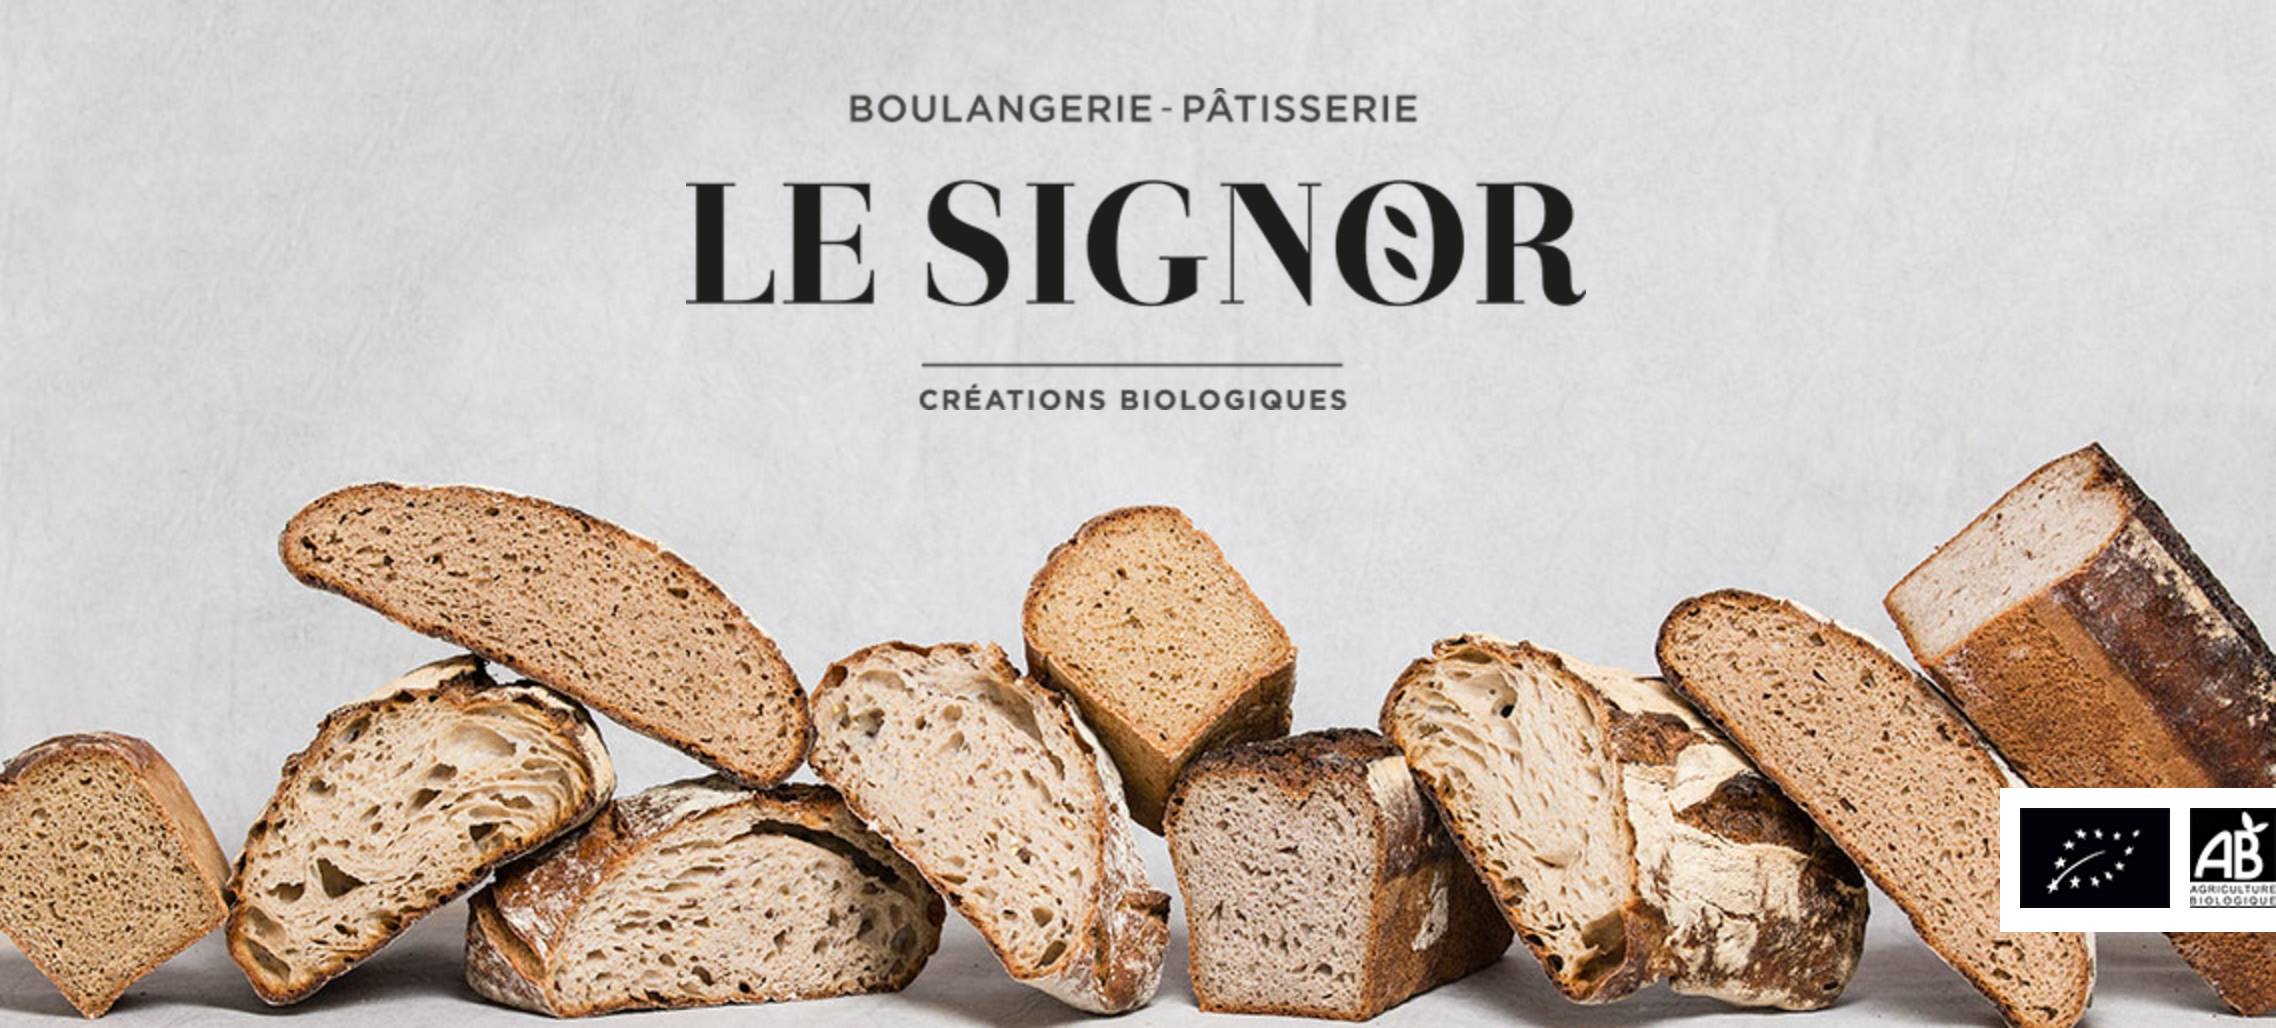 Boulangerie Le Signor.jpg